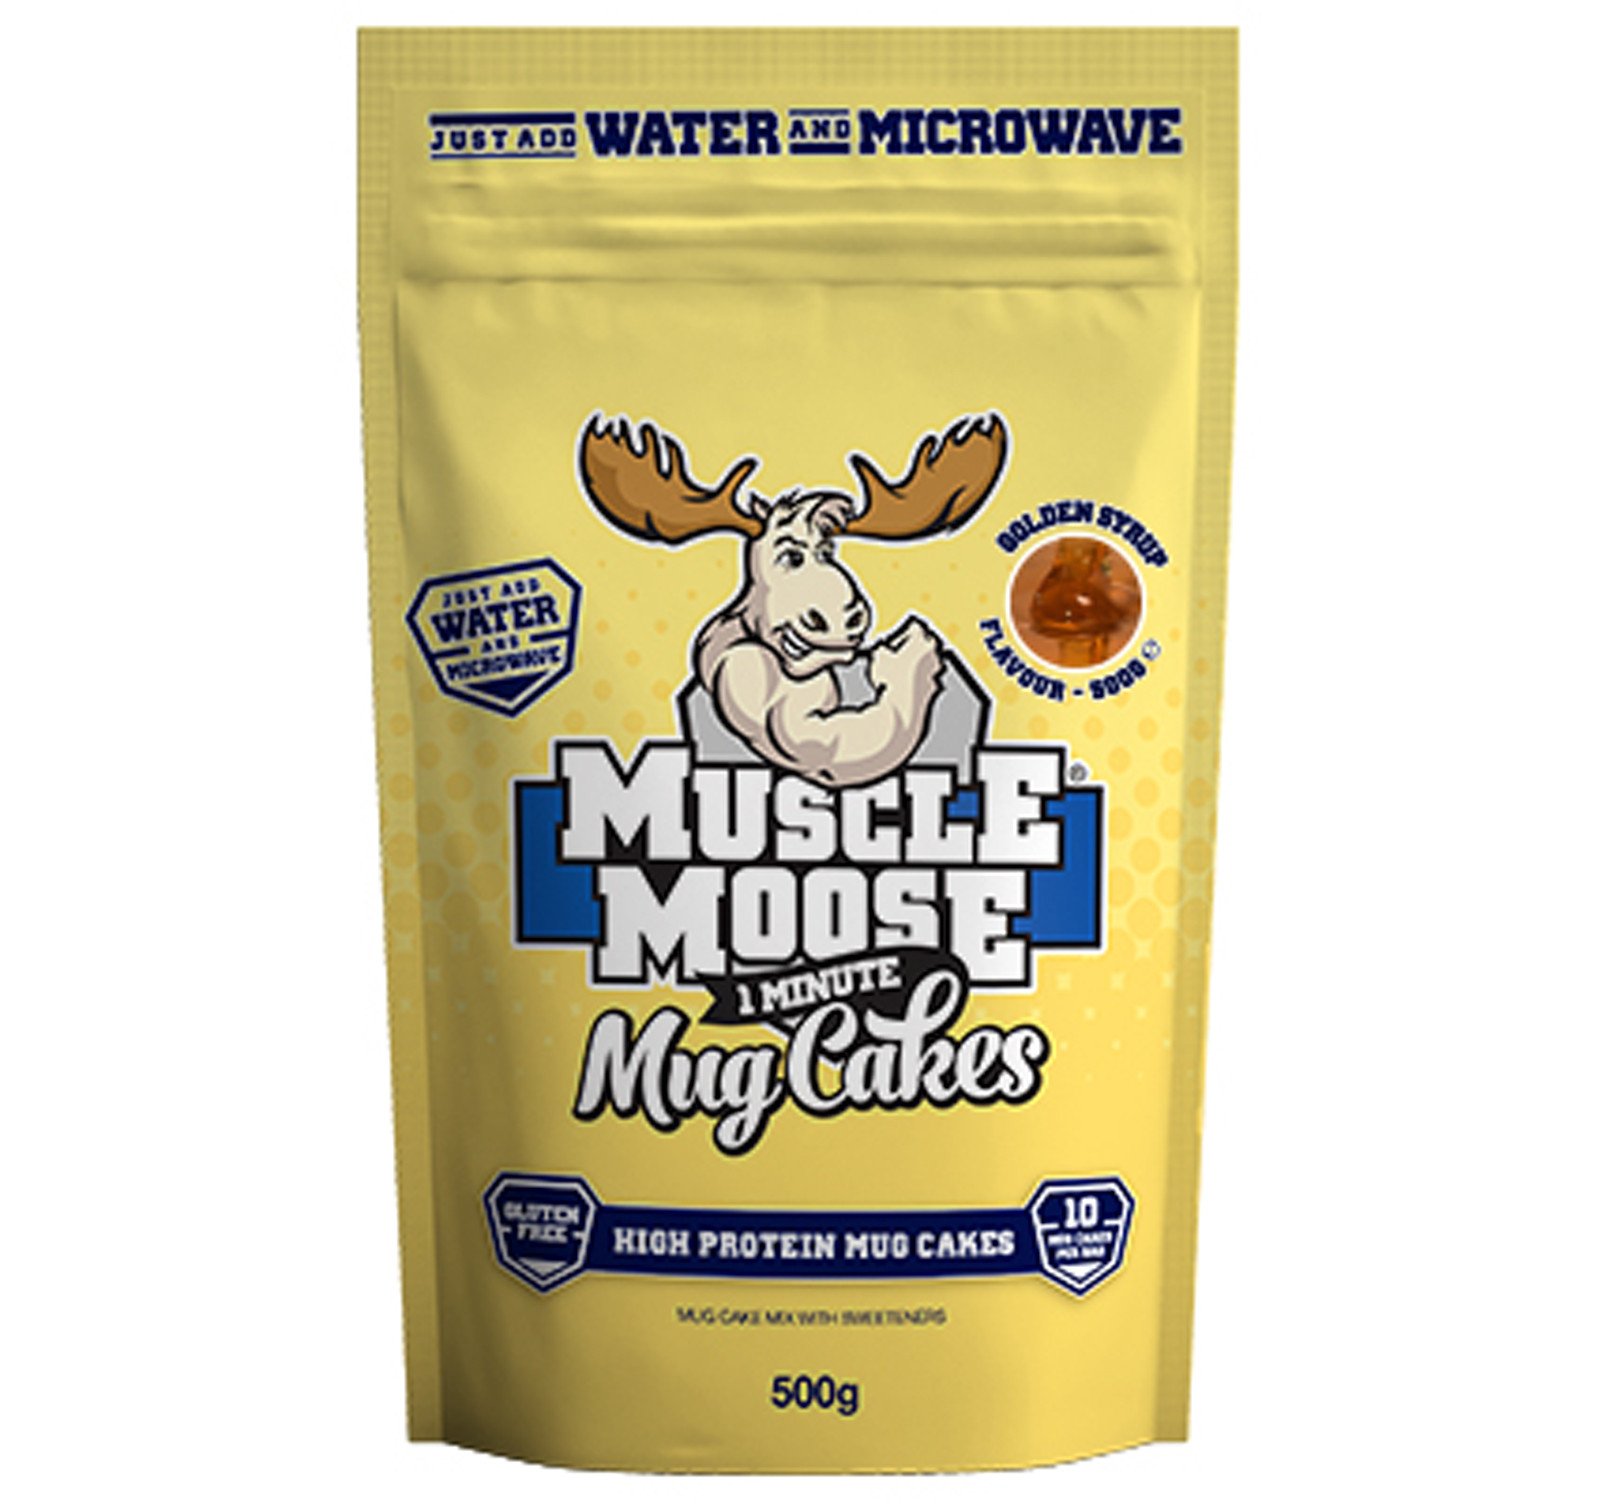 Muscle Mousse Mug Cake Golden Syrup - Shop Online ...